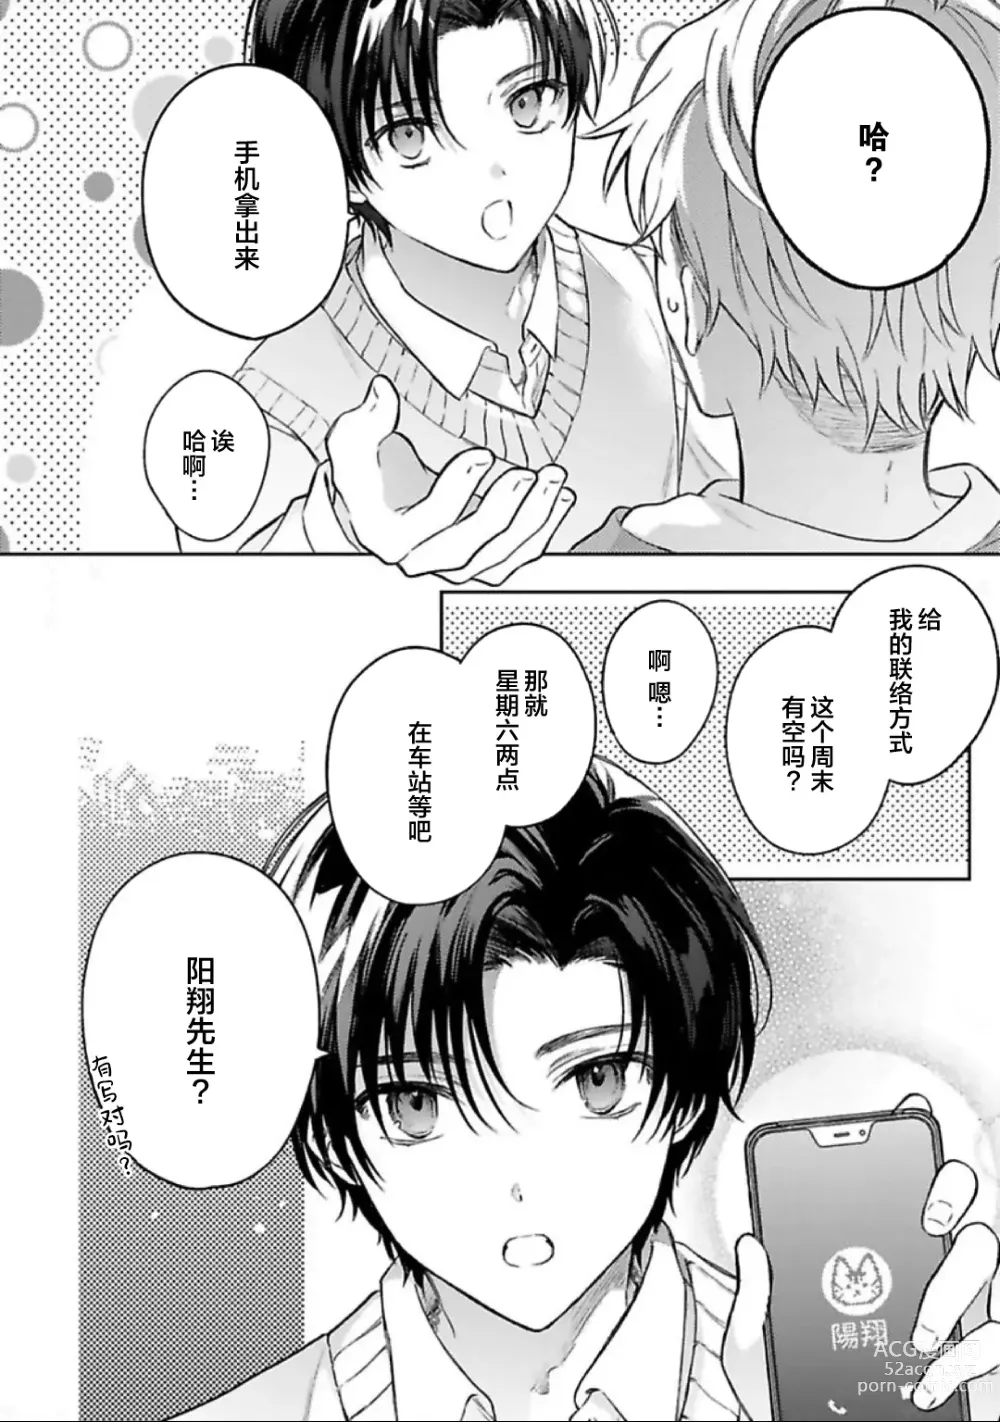 Page 21 of manga Sagashimonoha Kimidesuka｜你是我的所寻之物吗